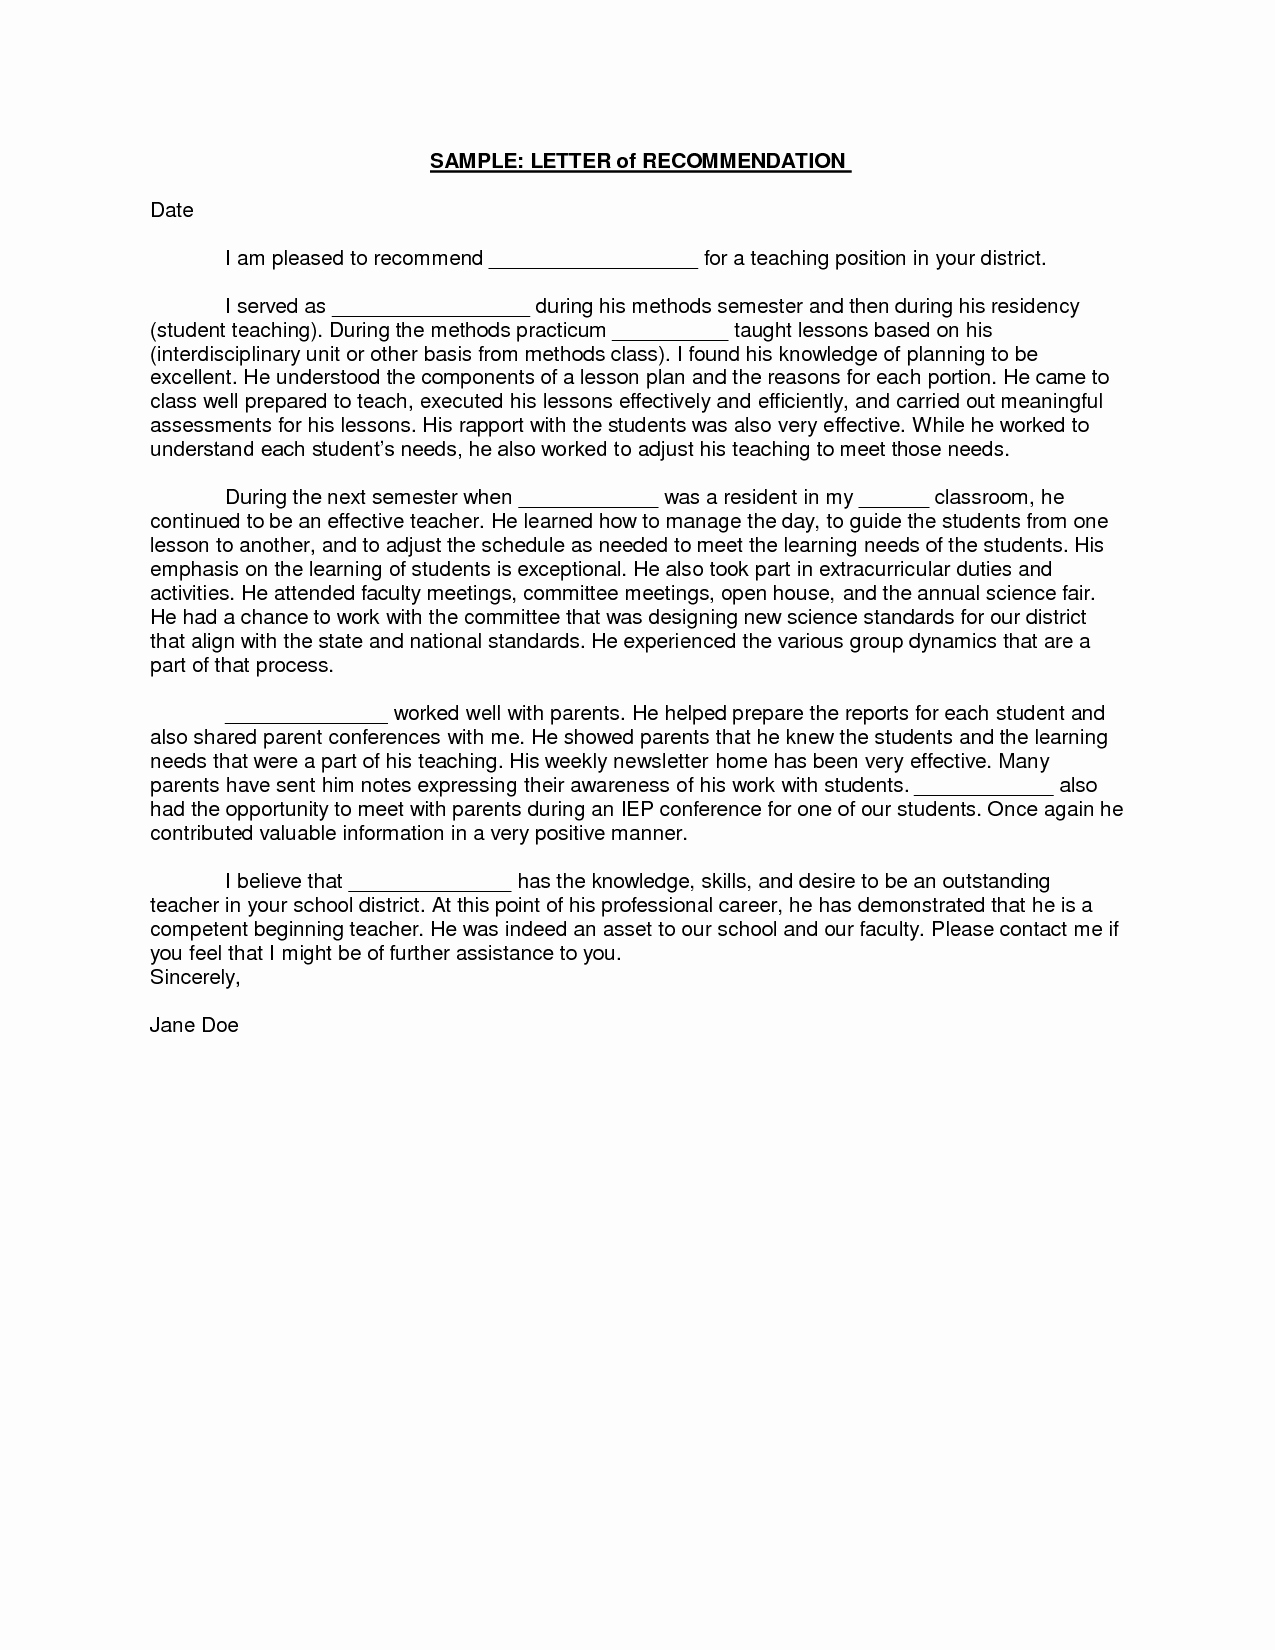 Reference Letter for Teaching Job Lovely Sample Student Teacher Re Mendation Letters V9nqmvof